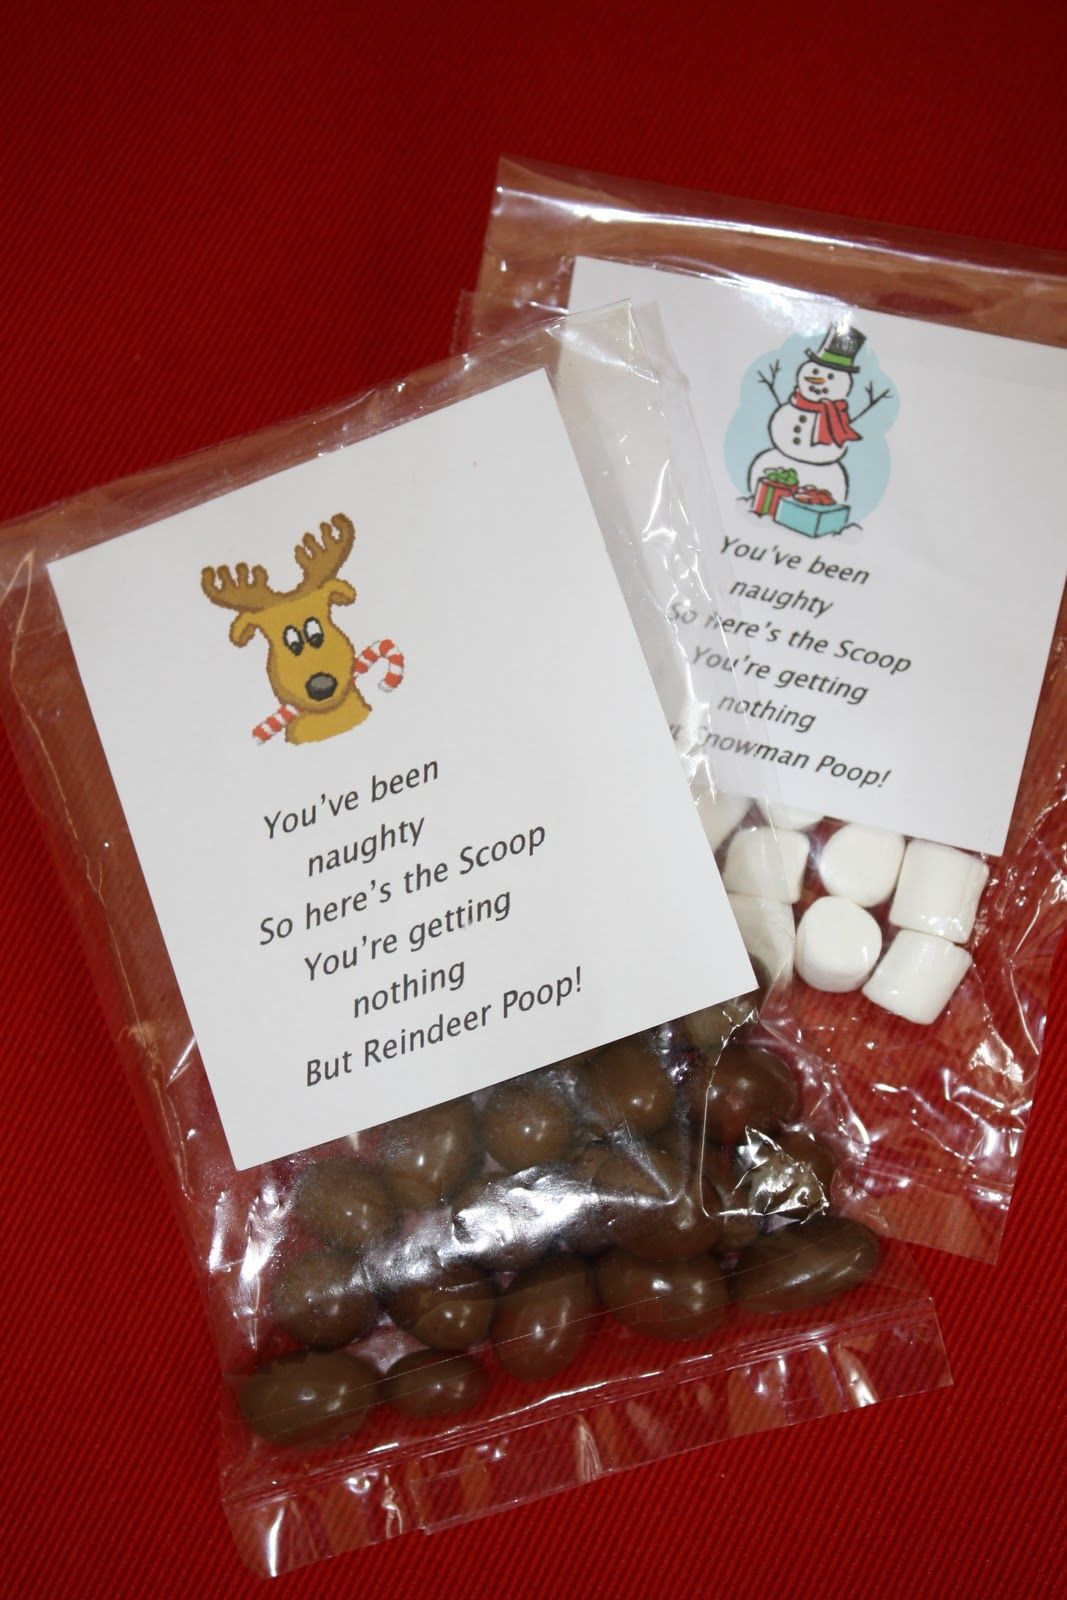 Christmas Candy Gram Ideas
 Reindeer Poop and Snowman Poop for christmas Candy grams